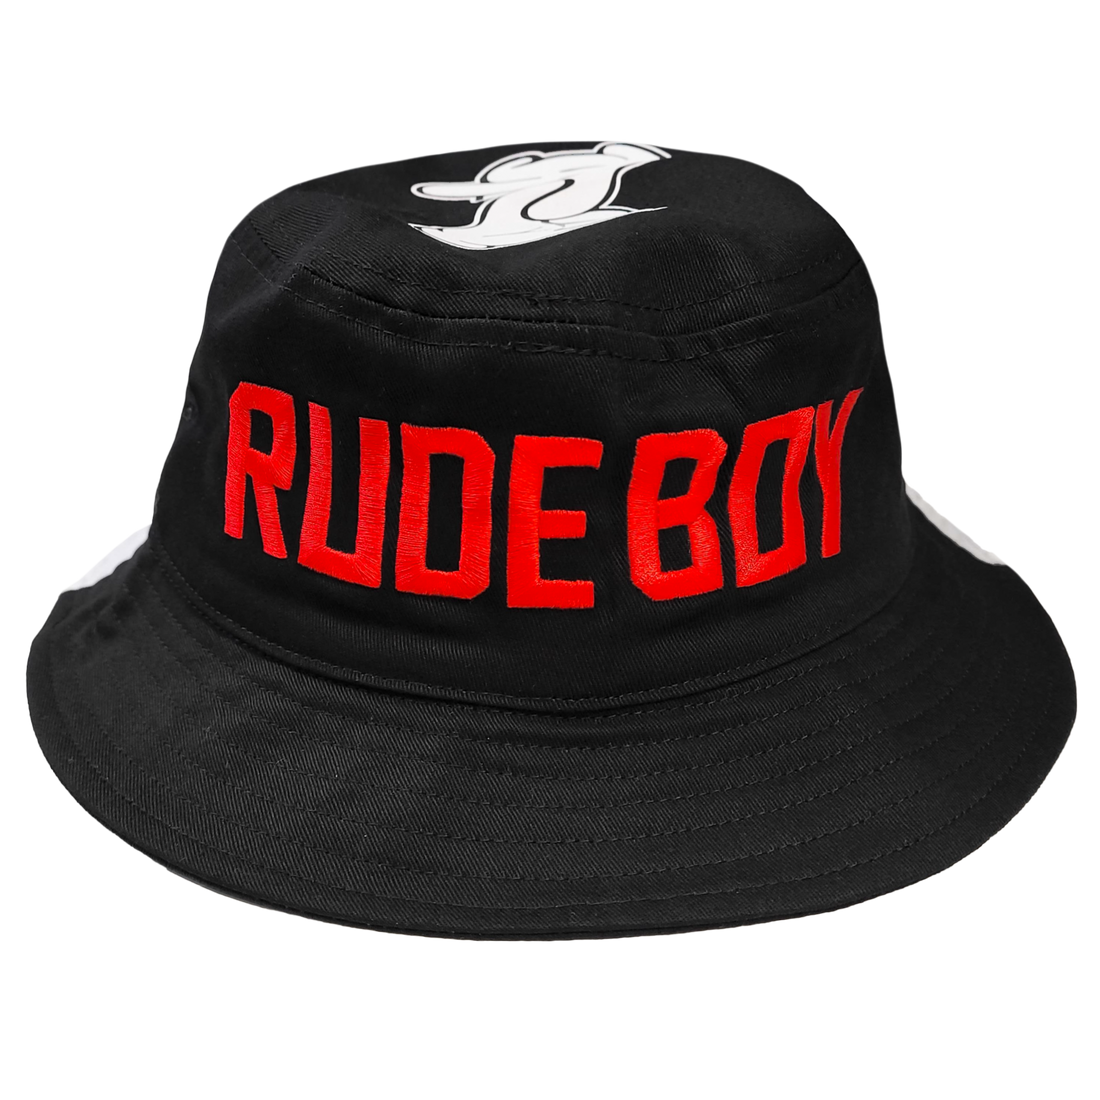 Zeds Dead - Rude Boy 2 Tone Bucket Hat